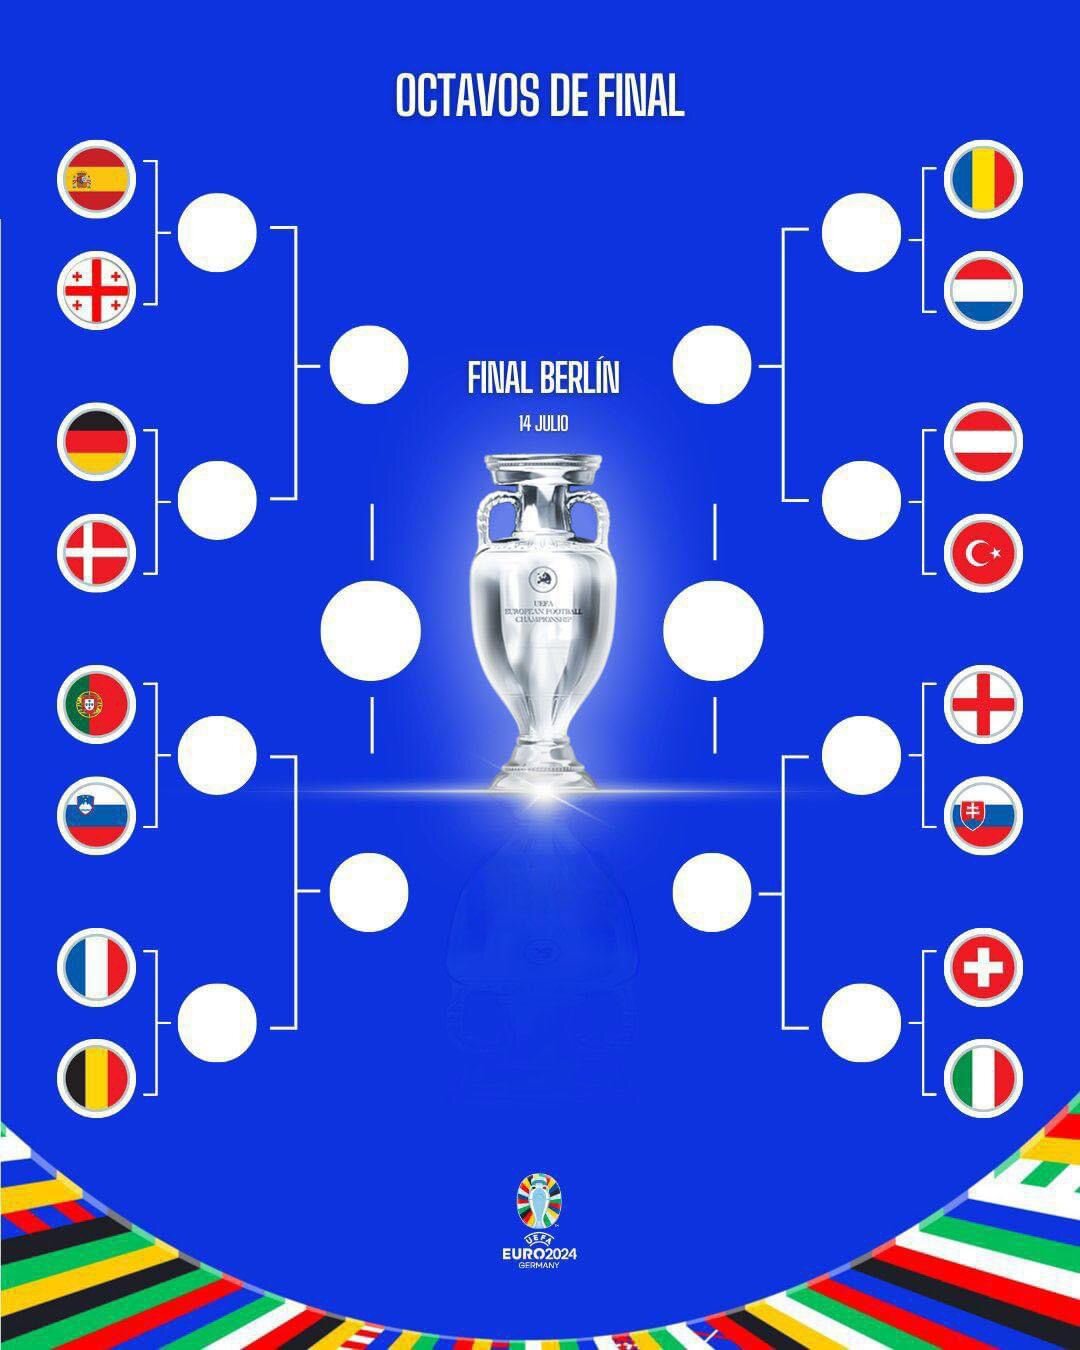 Octavos de Final eurocopa 2024 